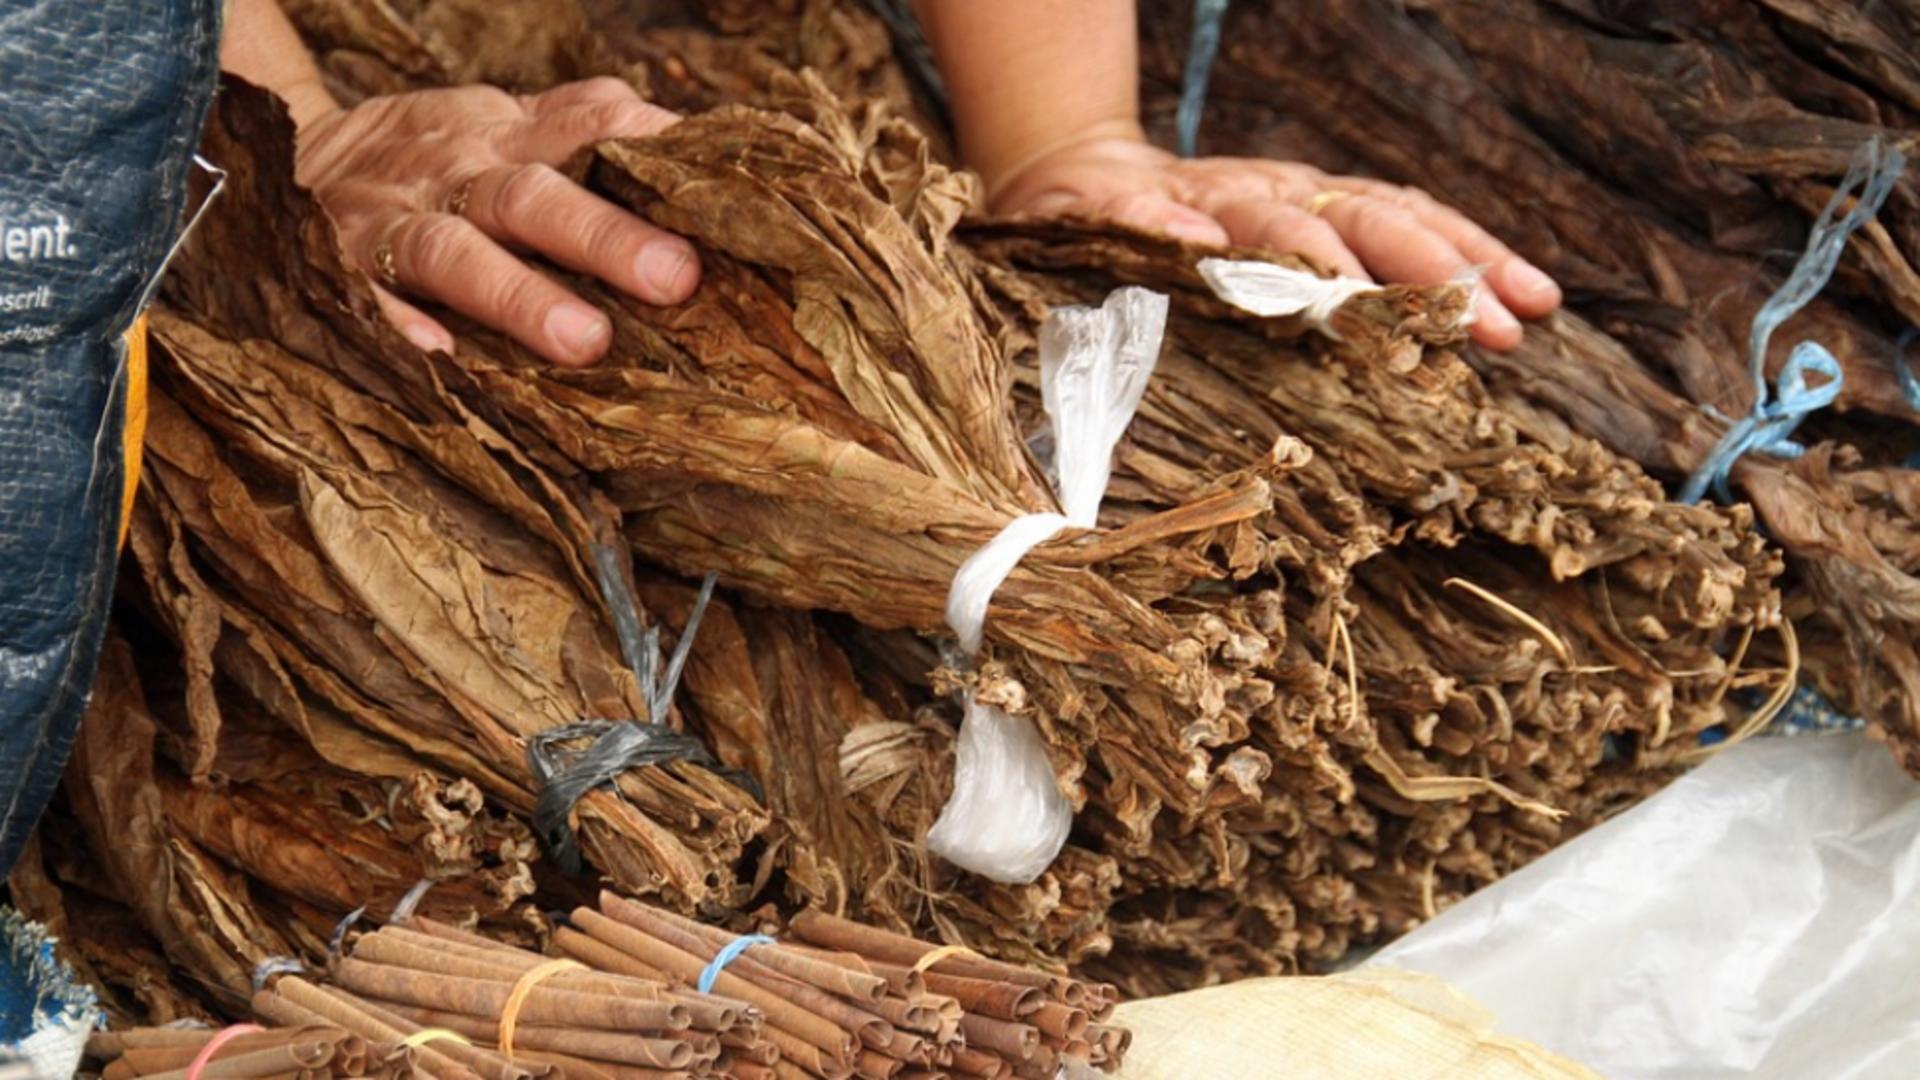 Polițiștii au descoperit  8 tone de frunze de tutun şi 1 tonă de tutun tocat într-o hală din Popești Leordeni